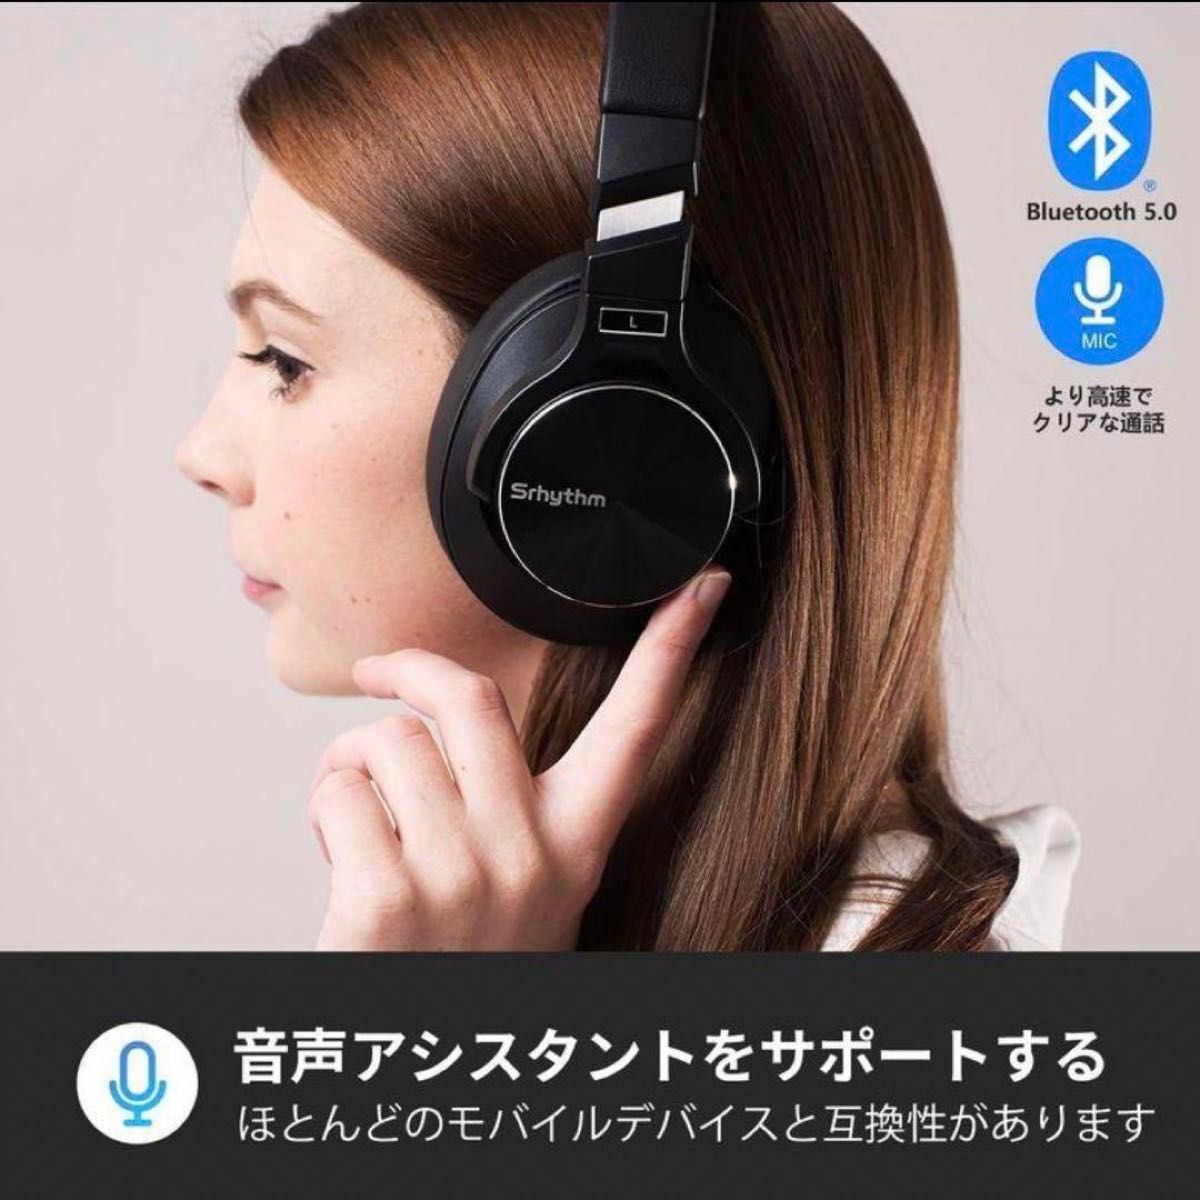 高音質 NC75Proノイズキャンセリング Srhythm ワイヤレスヘッドホン ブラック ヘッドフォン Bluetooth